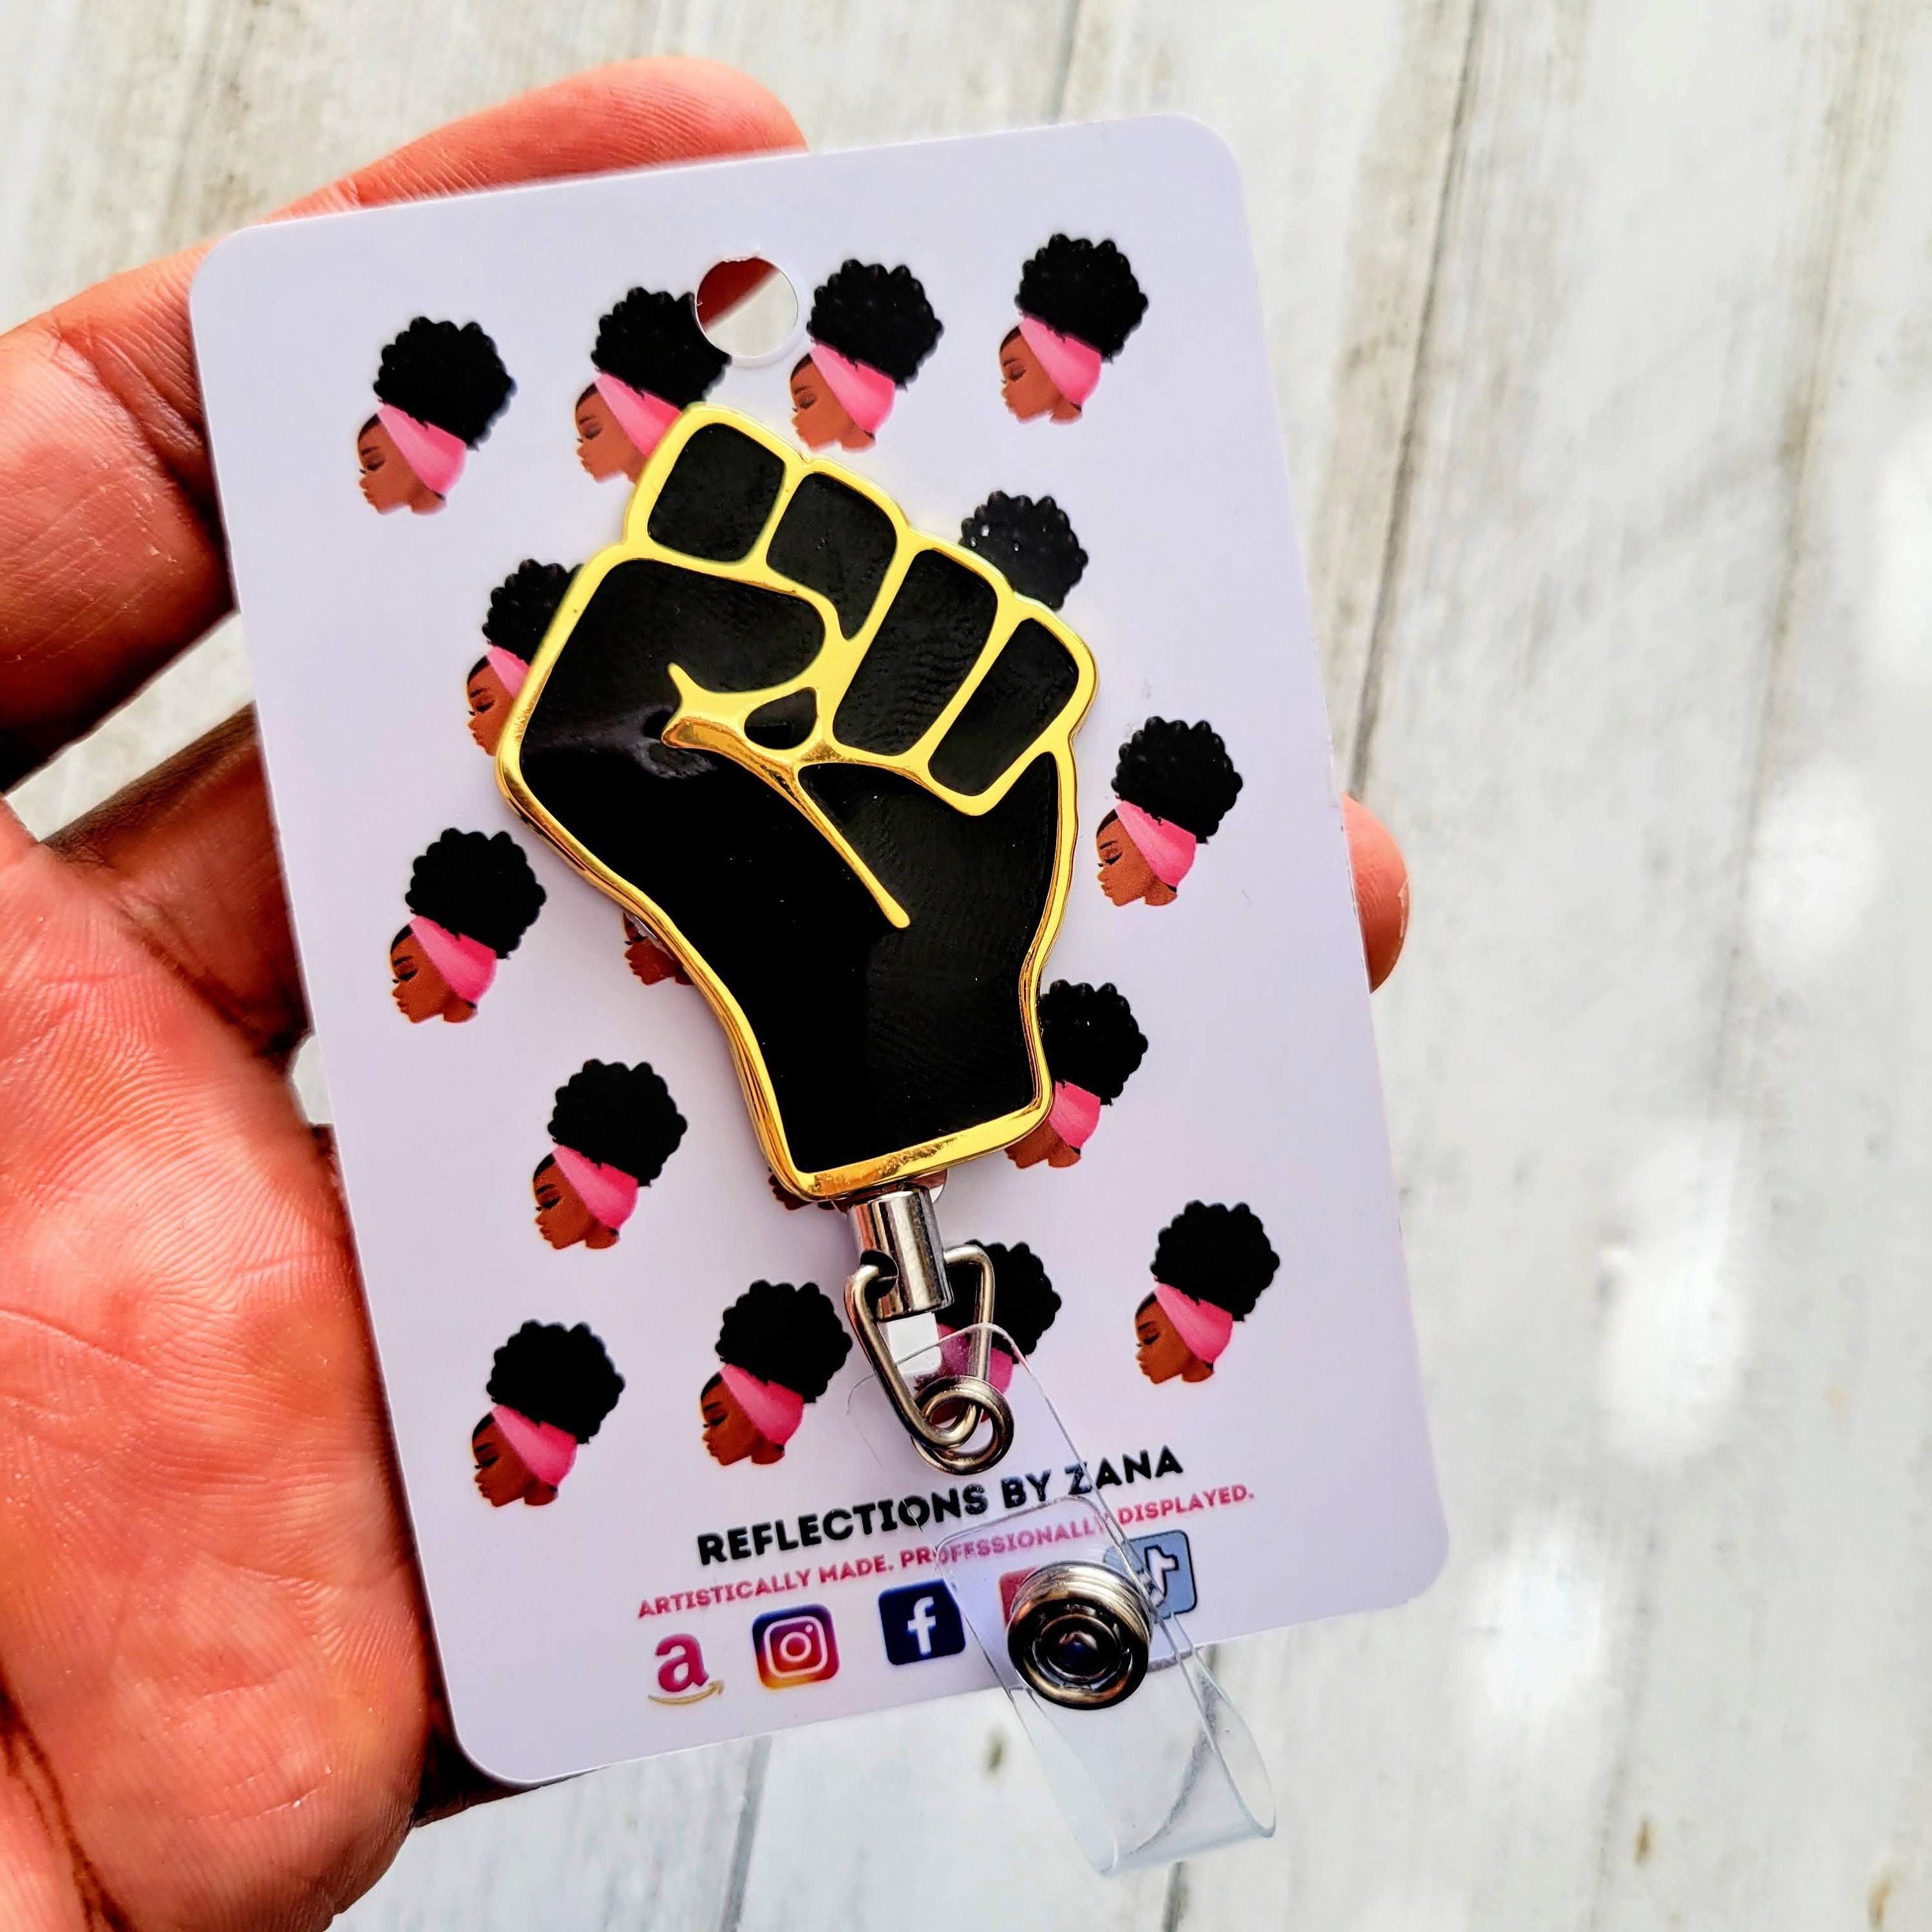 Black Fist Badge Reels, Social Justice Enamel Pin, Activism ID